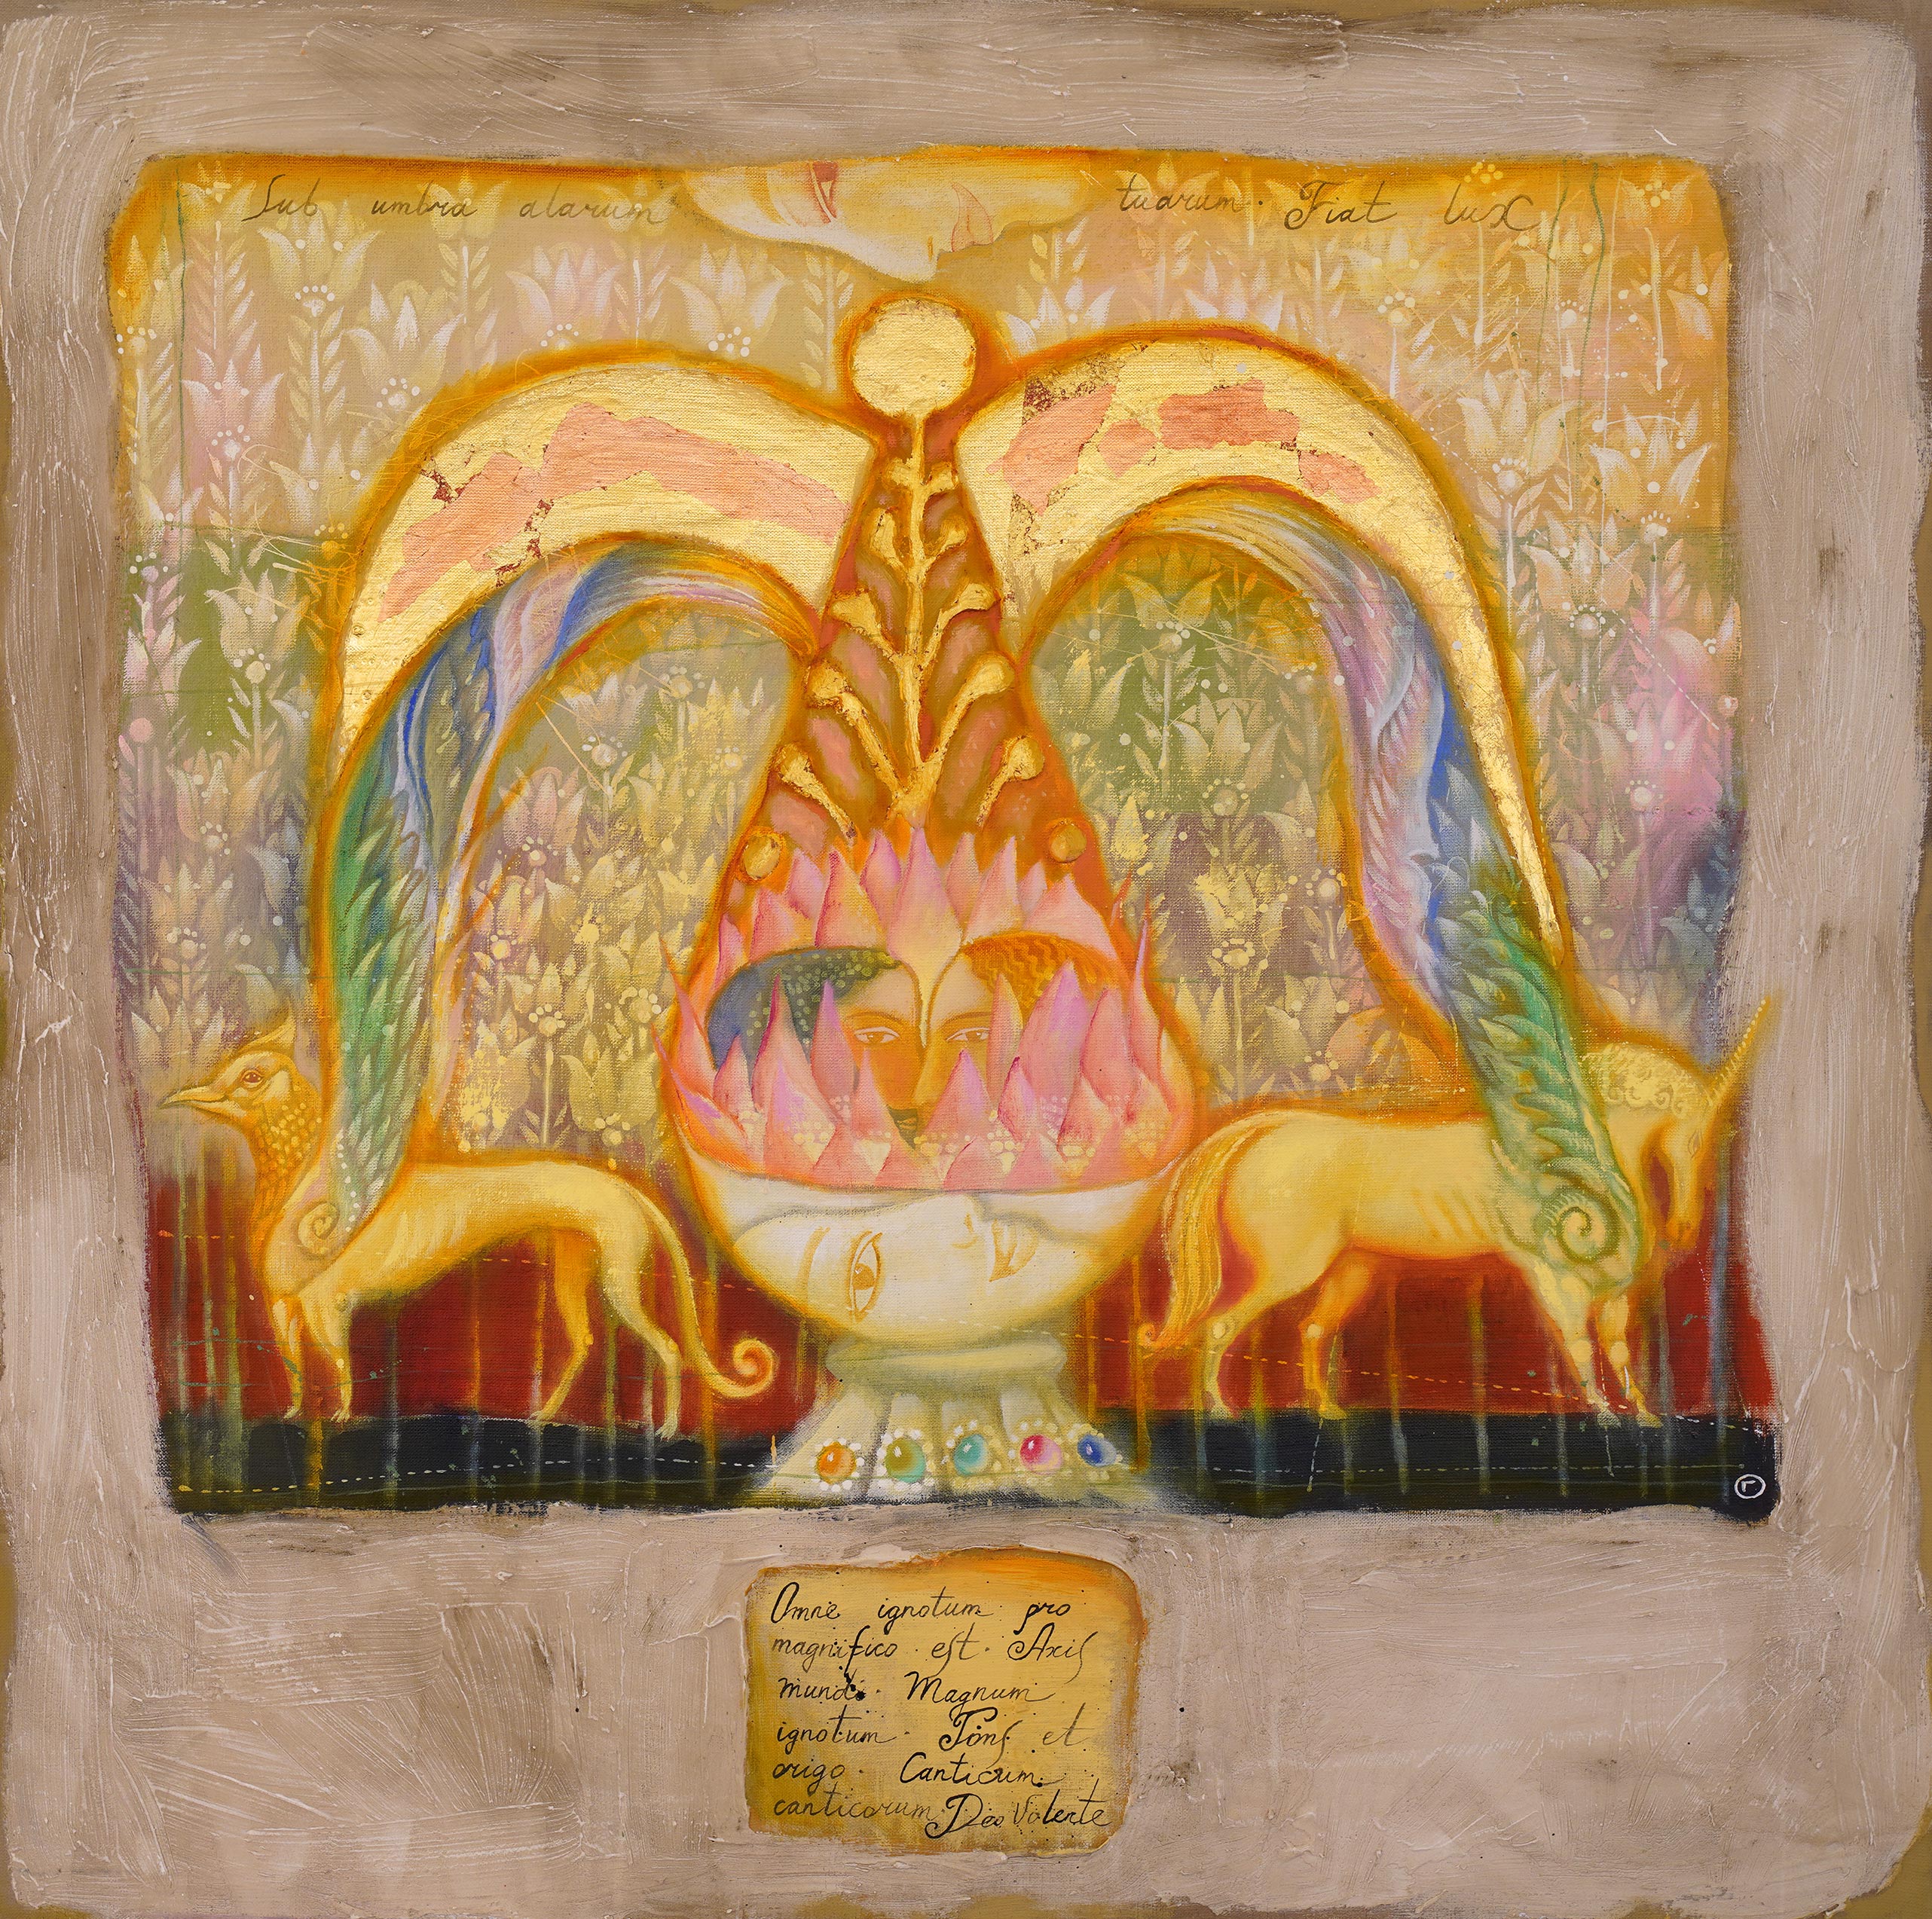 Bowl of Life - 1, Olga Gasparyan, Buy the painting Mixed media